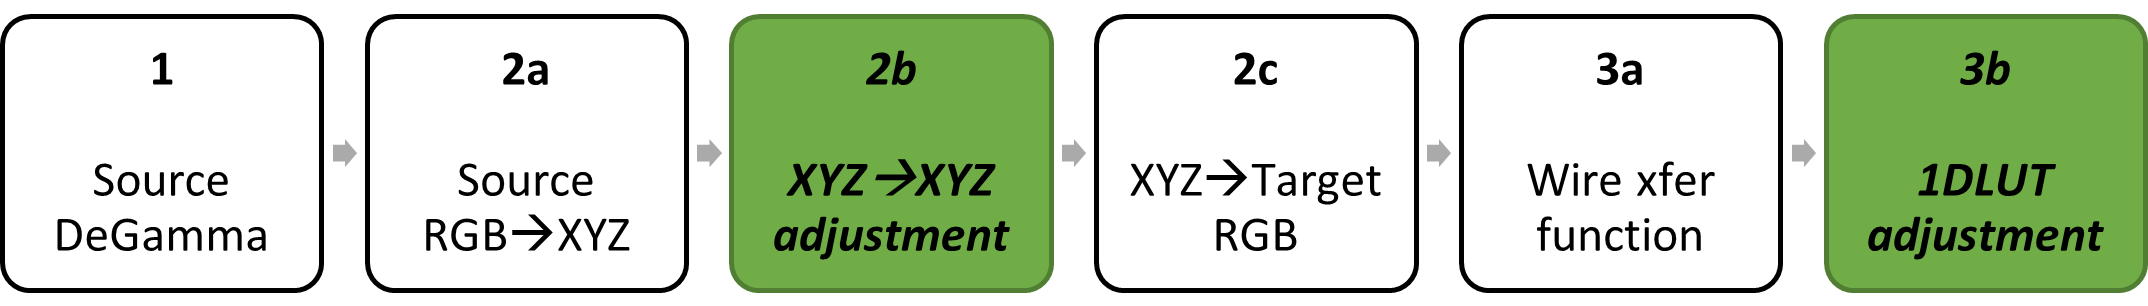 diagrama de bloco: degamma de origem; matriz de cores decomposta em RGB de origem para XYZ, XYZ para XYZ e XYZ para RGB de destino; regamma de destino decomposto em função de transferência eletrônica, ajuste de 1DLUT